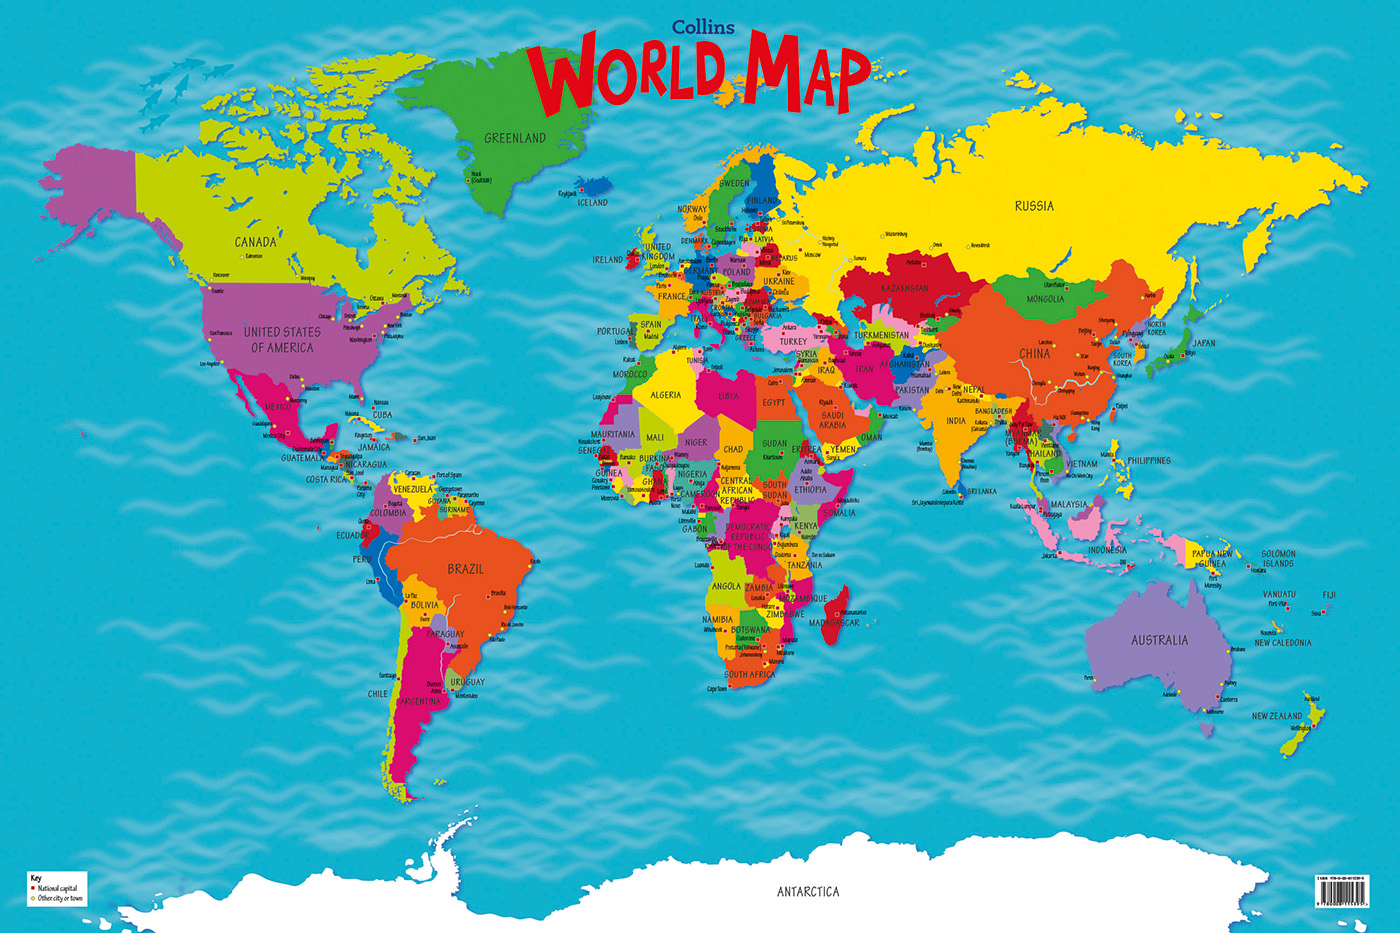 Collins Children's World Map on Behance